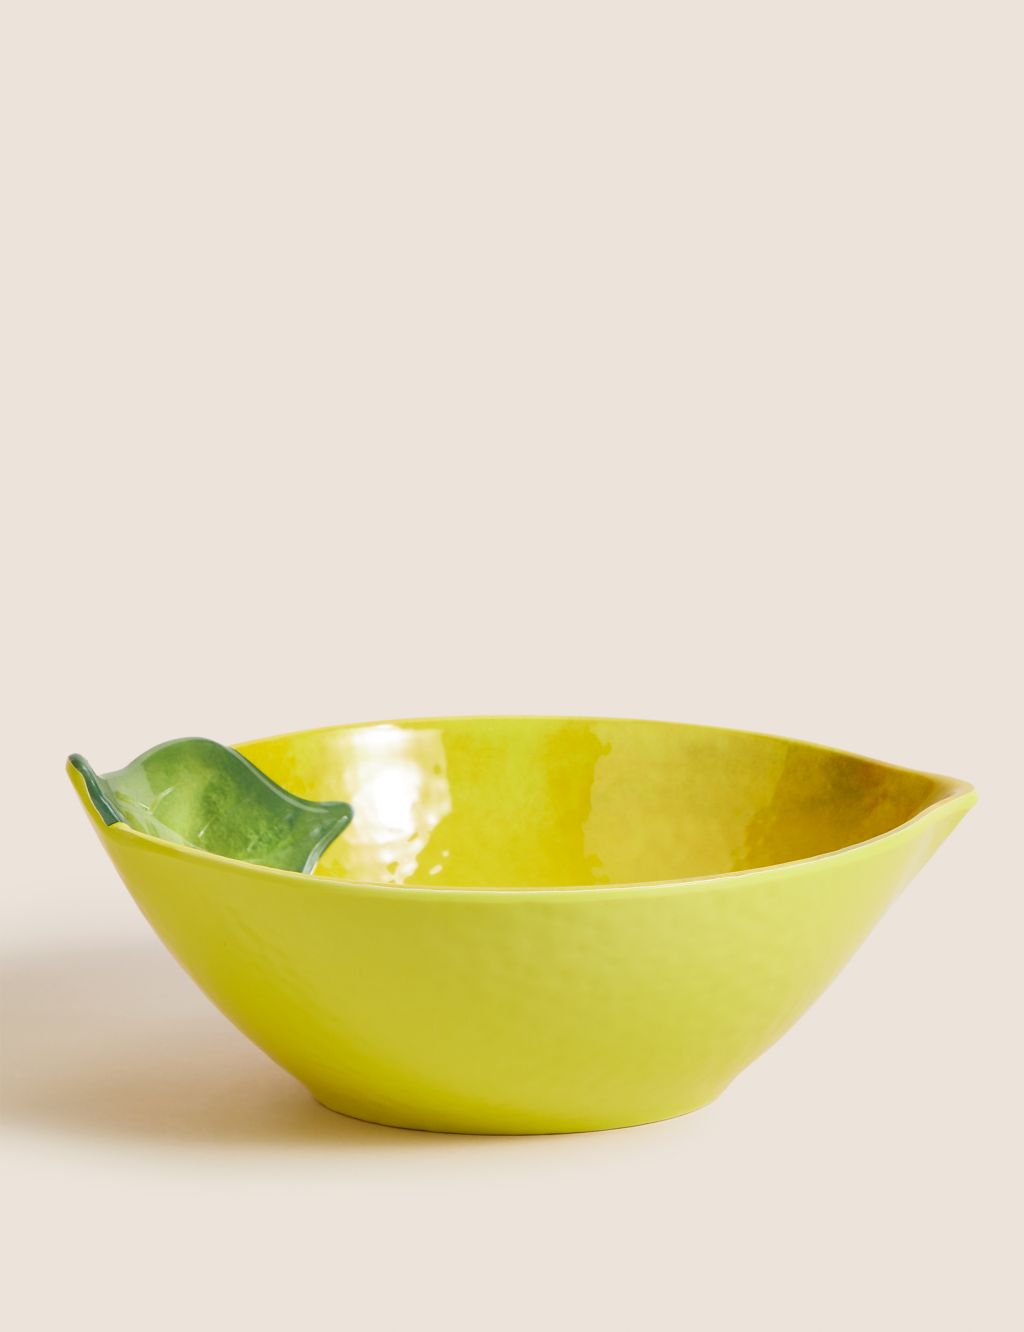 Large Lemon Picnic Bowl